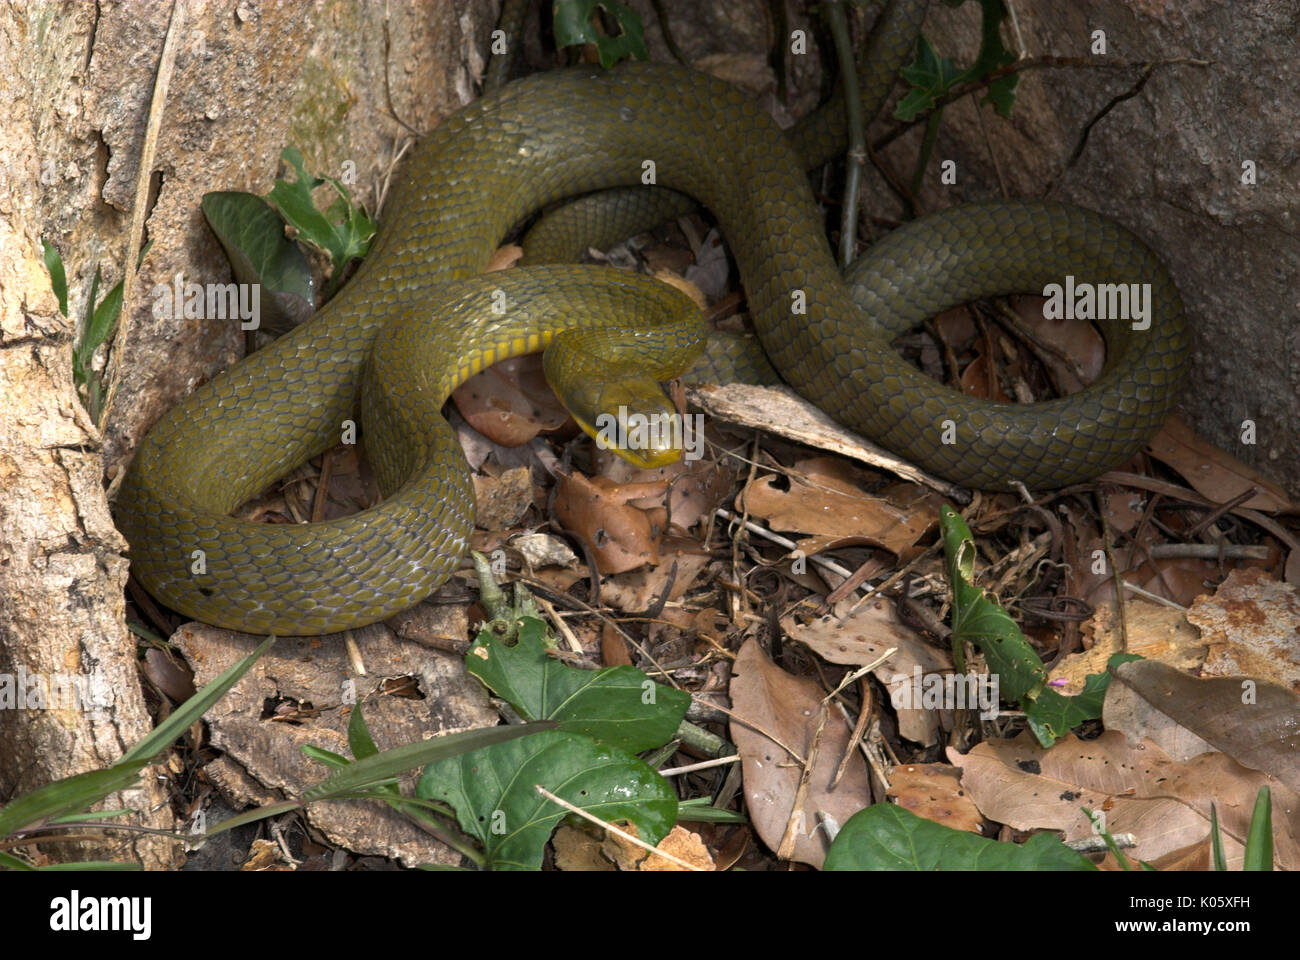 Grüne Ratte Schlange, Elaphe triapsis, Manu, Peru, durch Baum, Dschungel,  amazon Stockfotografie - Alamy